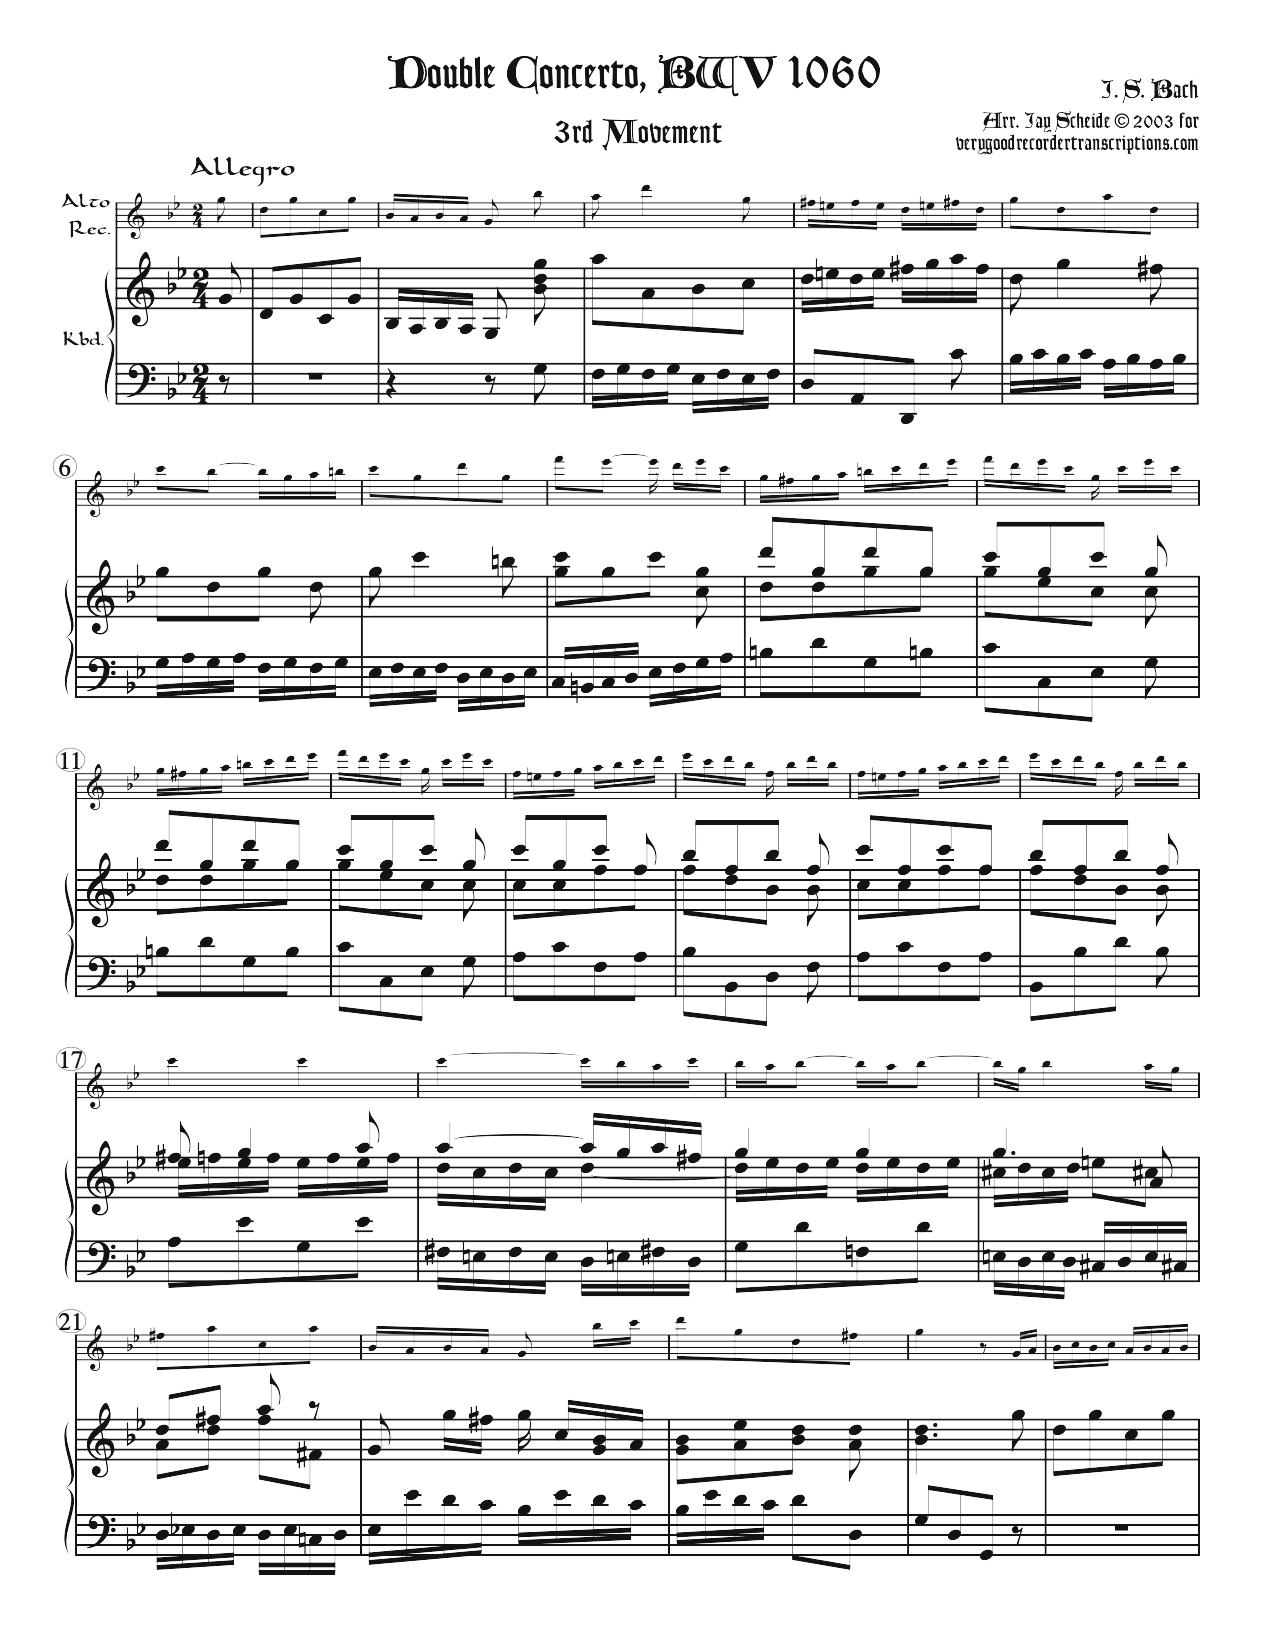 Concerto No. 1 for 2 Harpsichords, BWV 1060, 3rd Mvt.